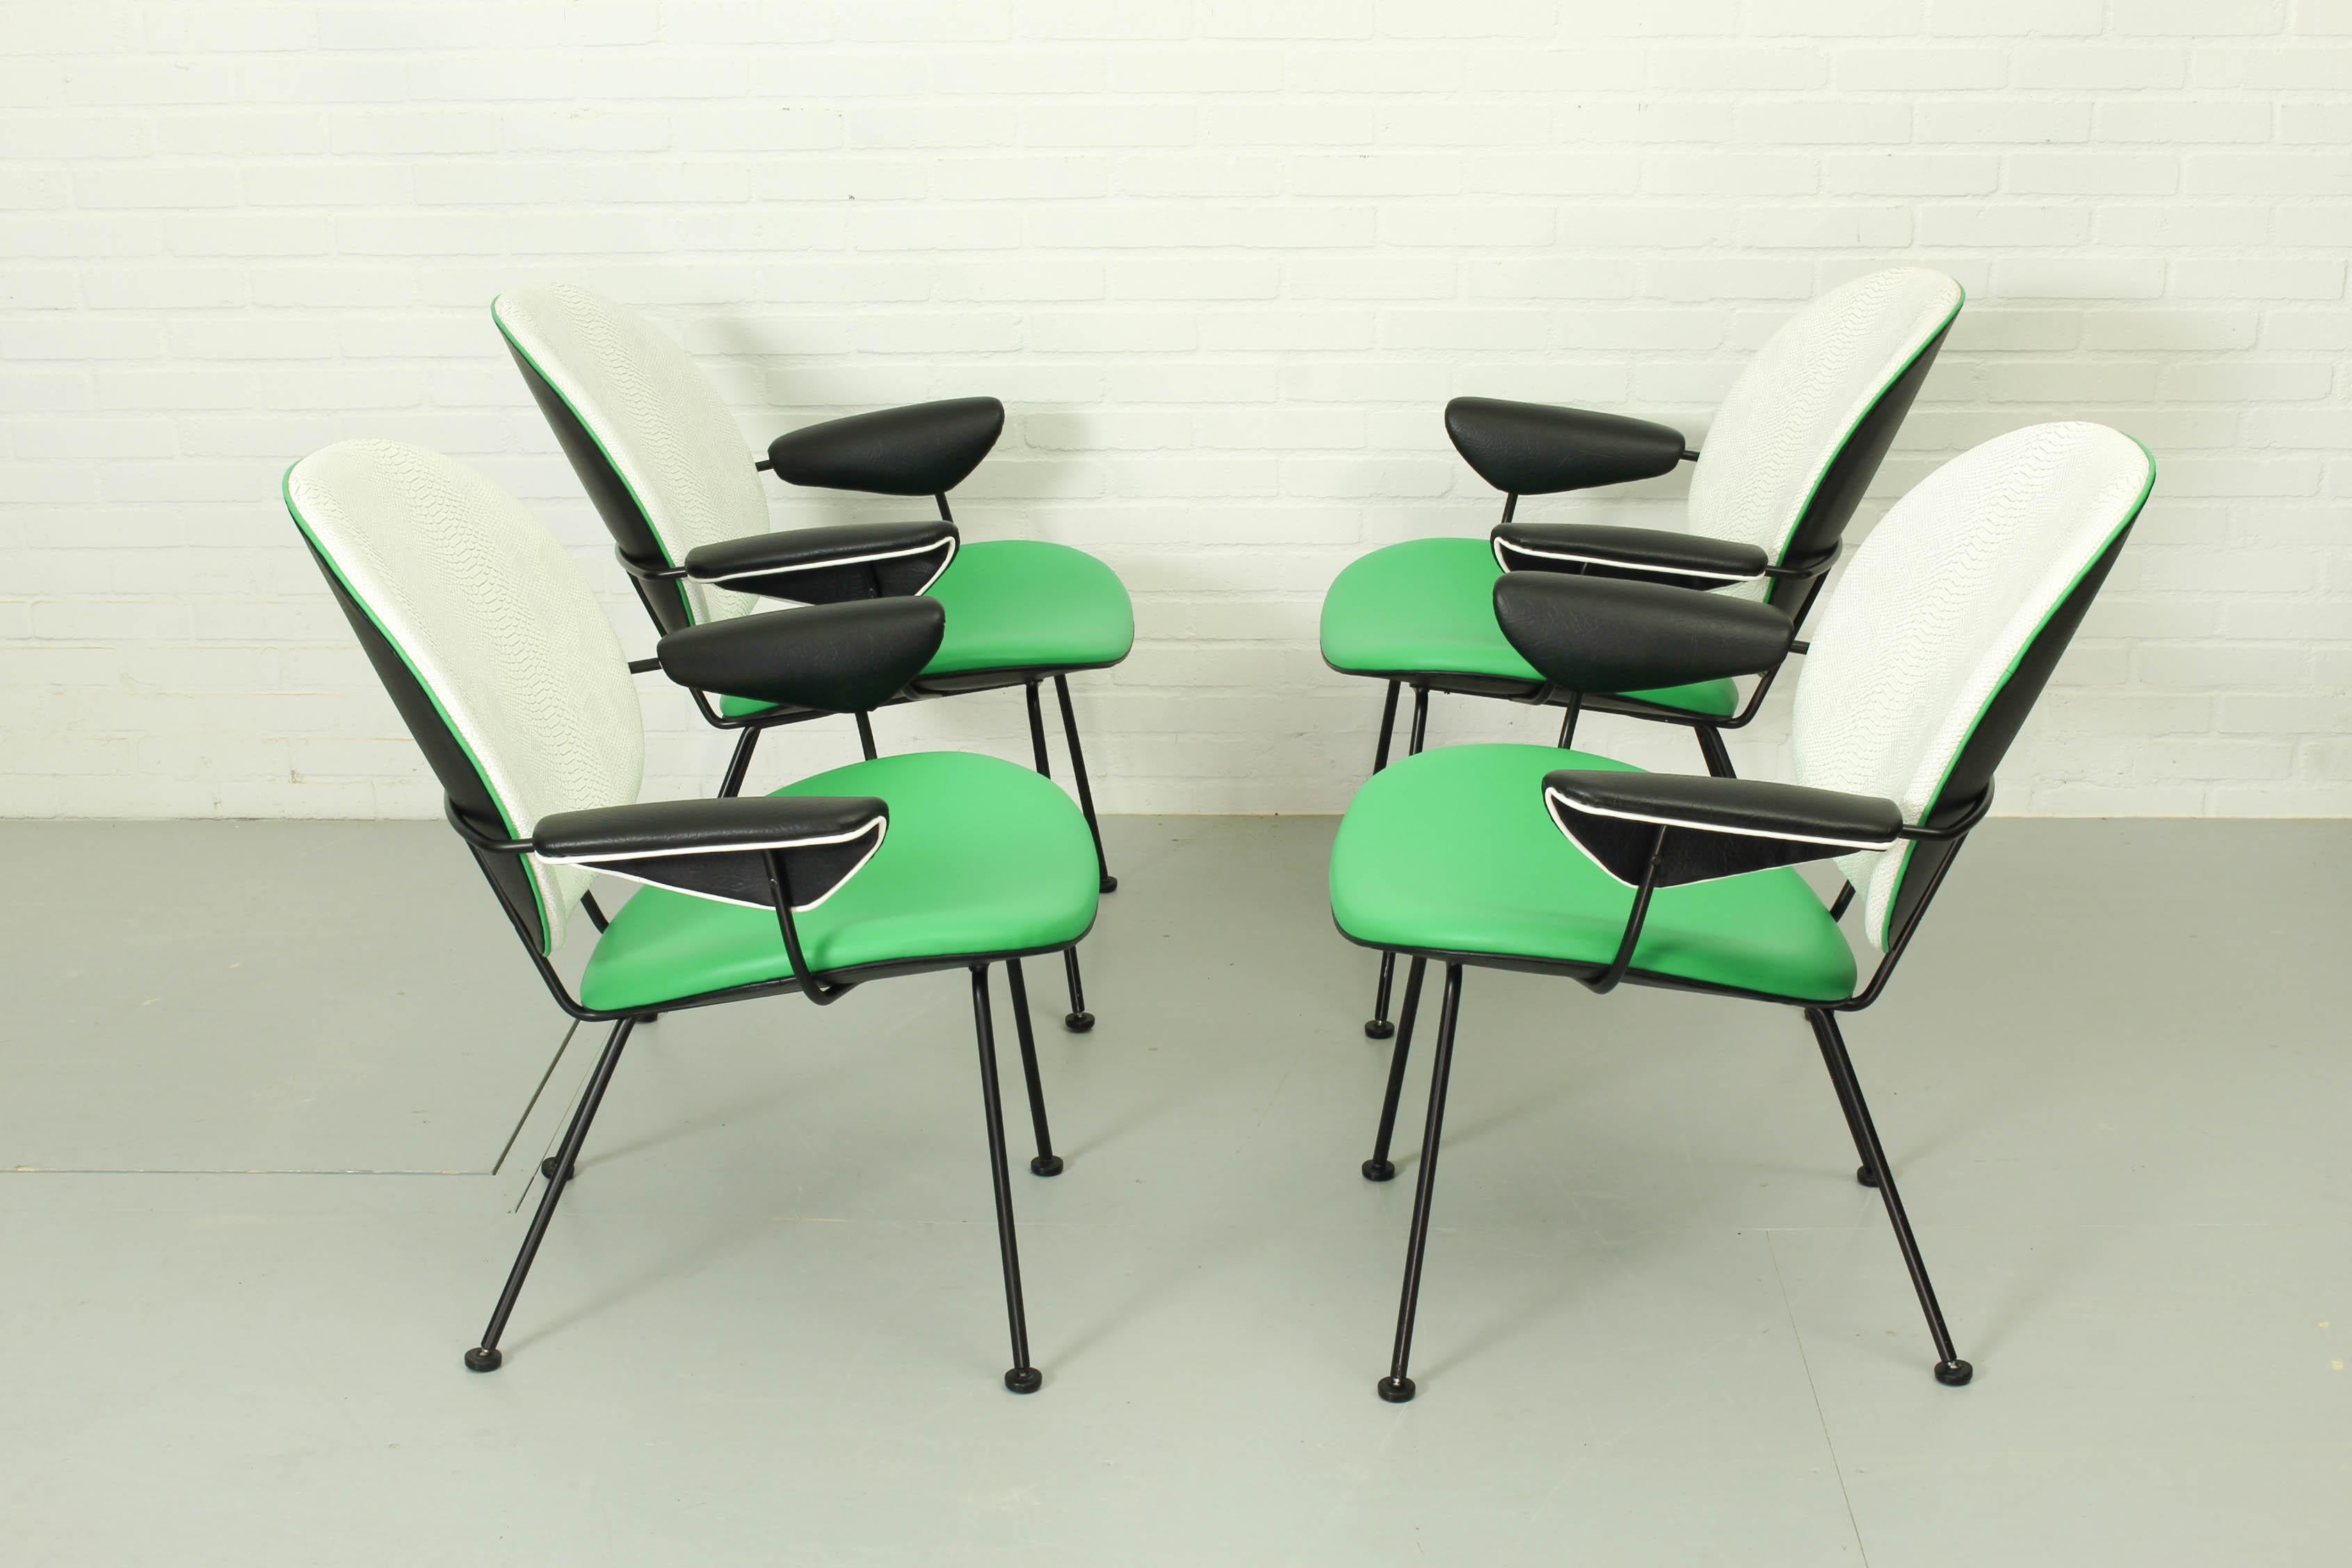 Diese Sessel, Modell 302, wurden von W.H. Gispen für Kembo in den 1950er Jahren. Diese Stühle haben ein Metallrohrgestell und sind mit Vinyl gepolstert. Die Stühle sind in einem sehr guten Vintage-Zustand. 

Abmessungen: Tiefe 48cm, Breite 66cm,